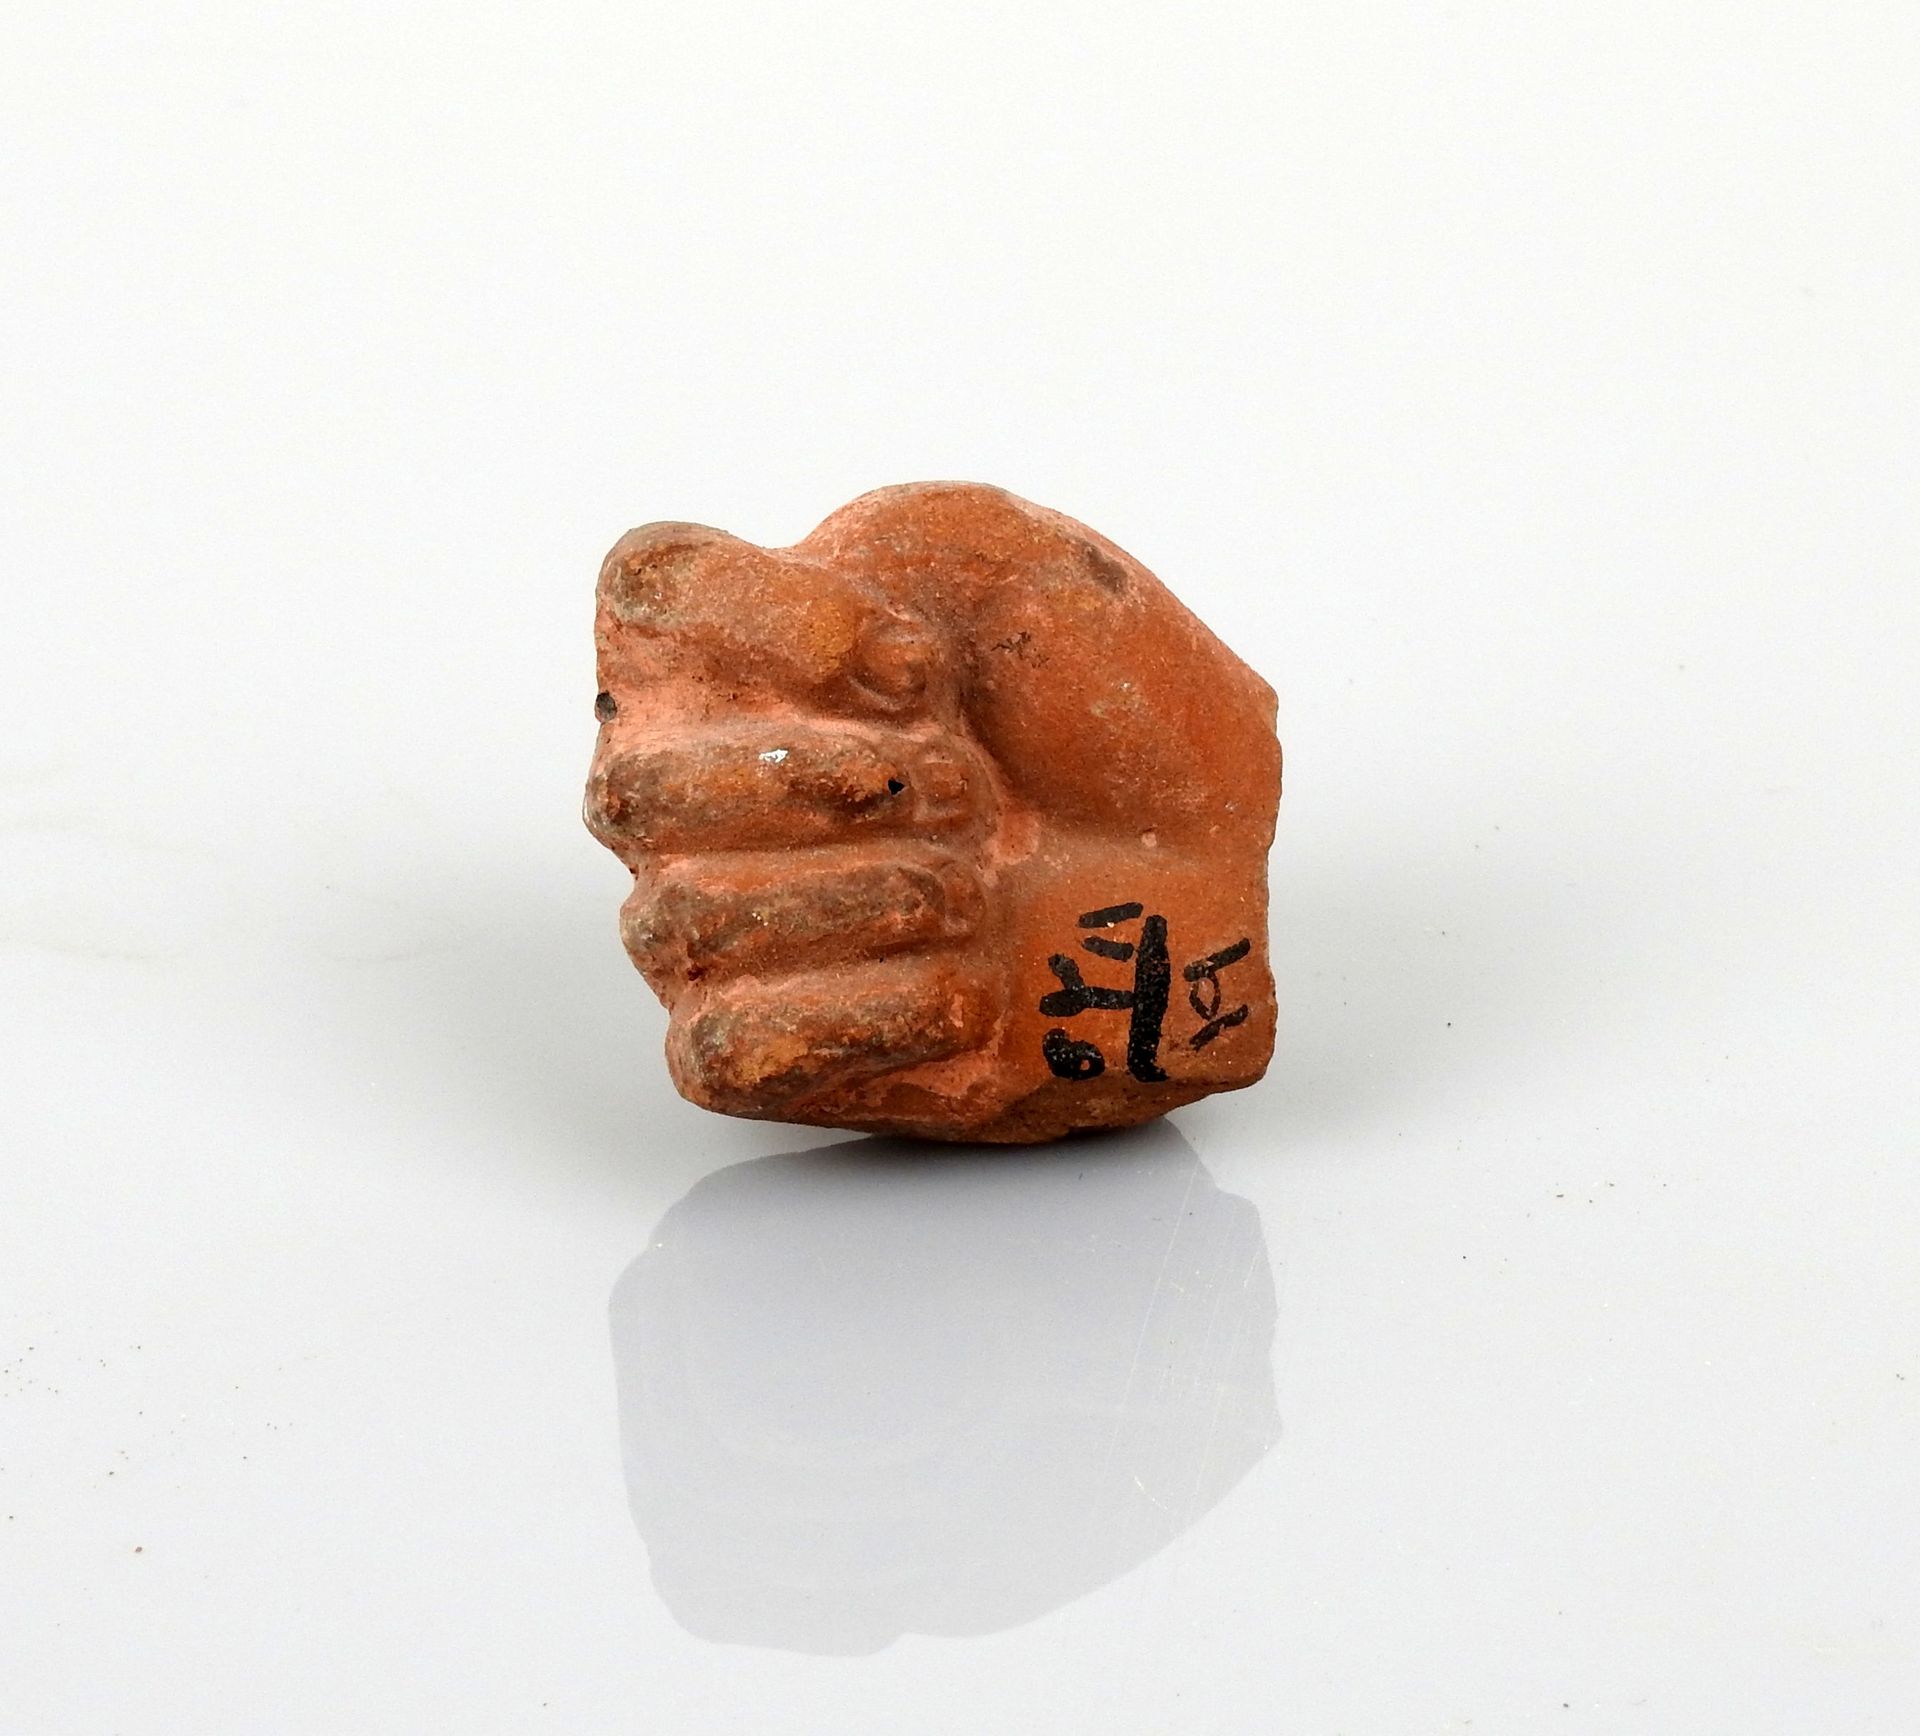 Null 大雕像的手

陶土3厘米

罗马时期